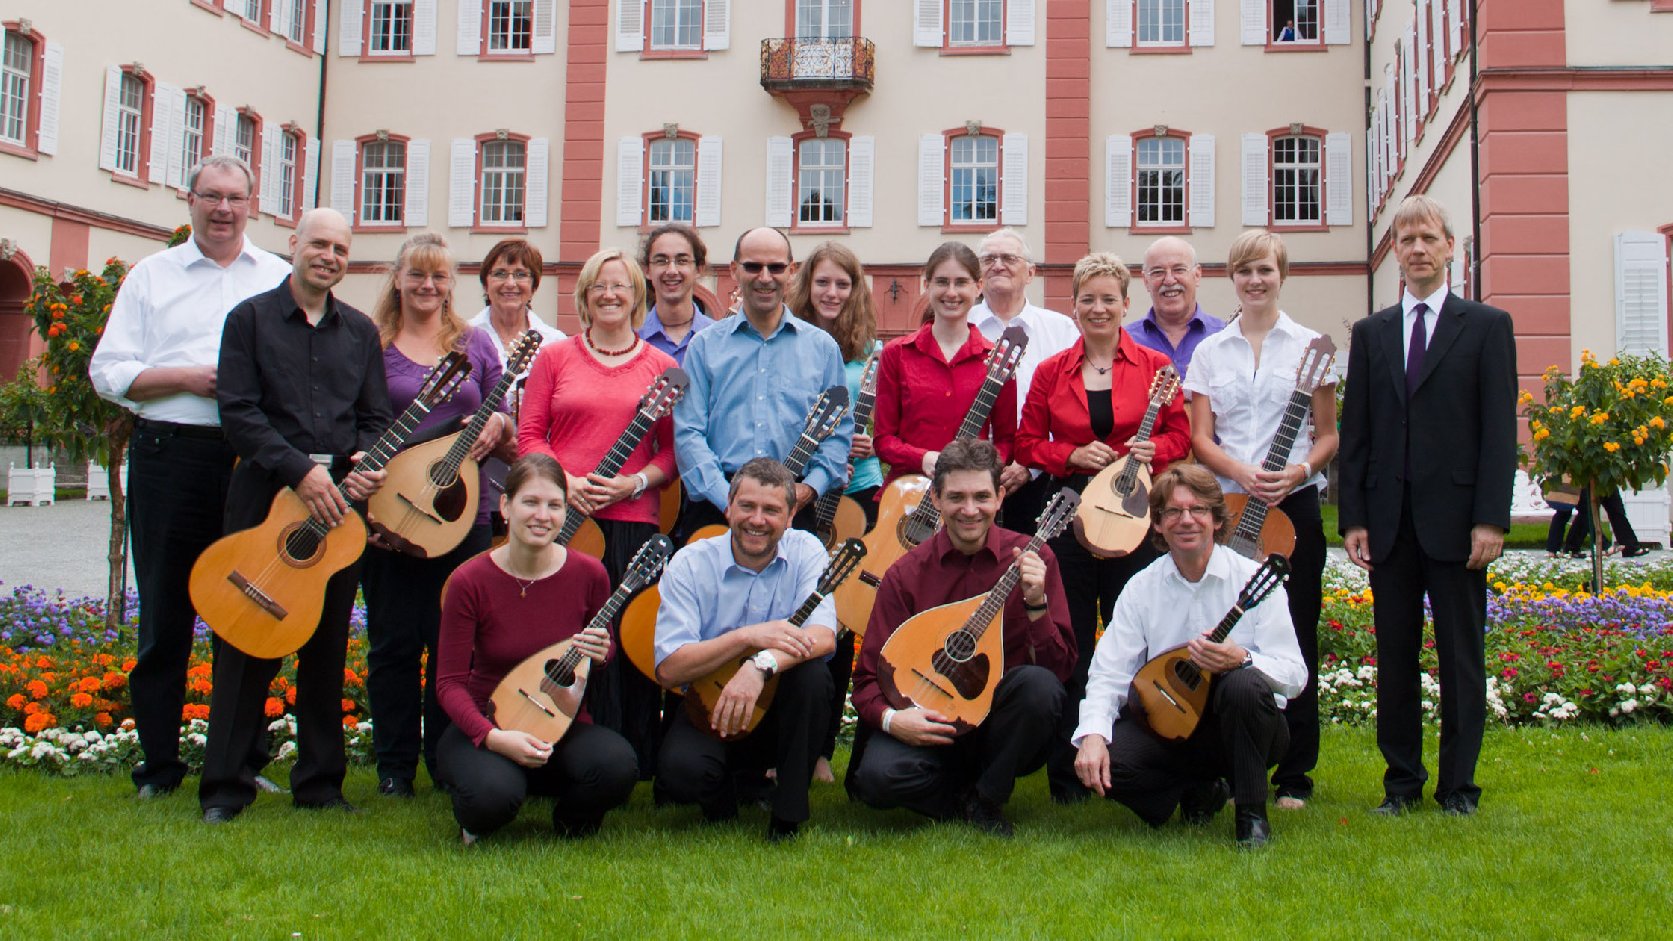 Mandolinata aus Karlsruhe veranstalten ein etwas anderes Konzert. Foto: v. privat